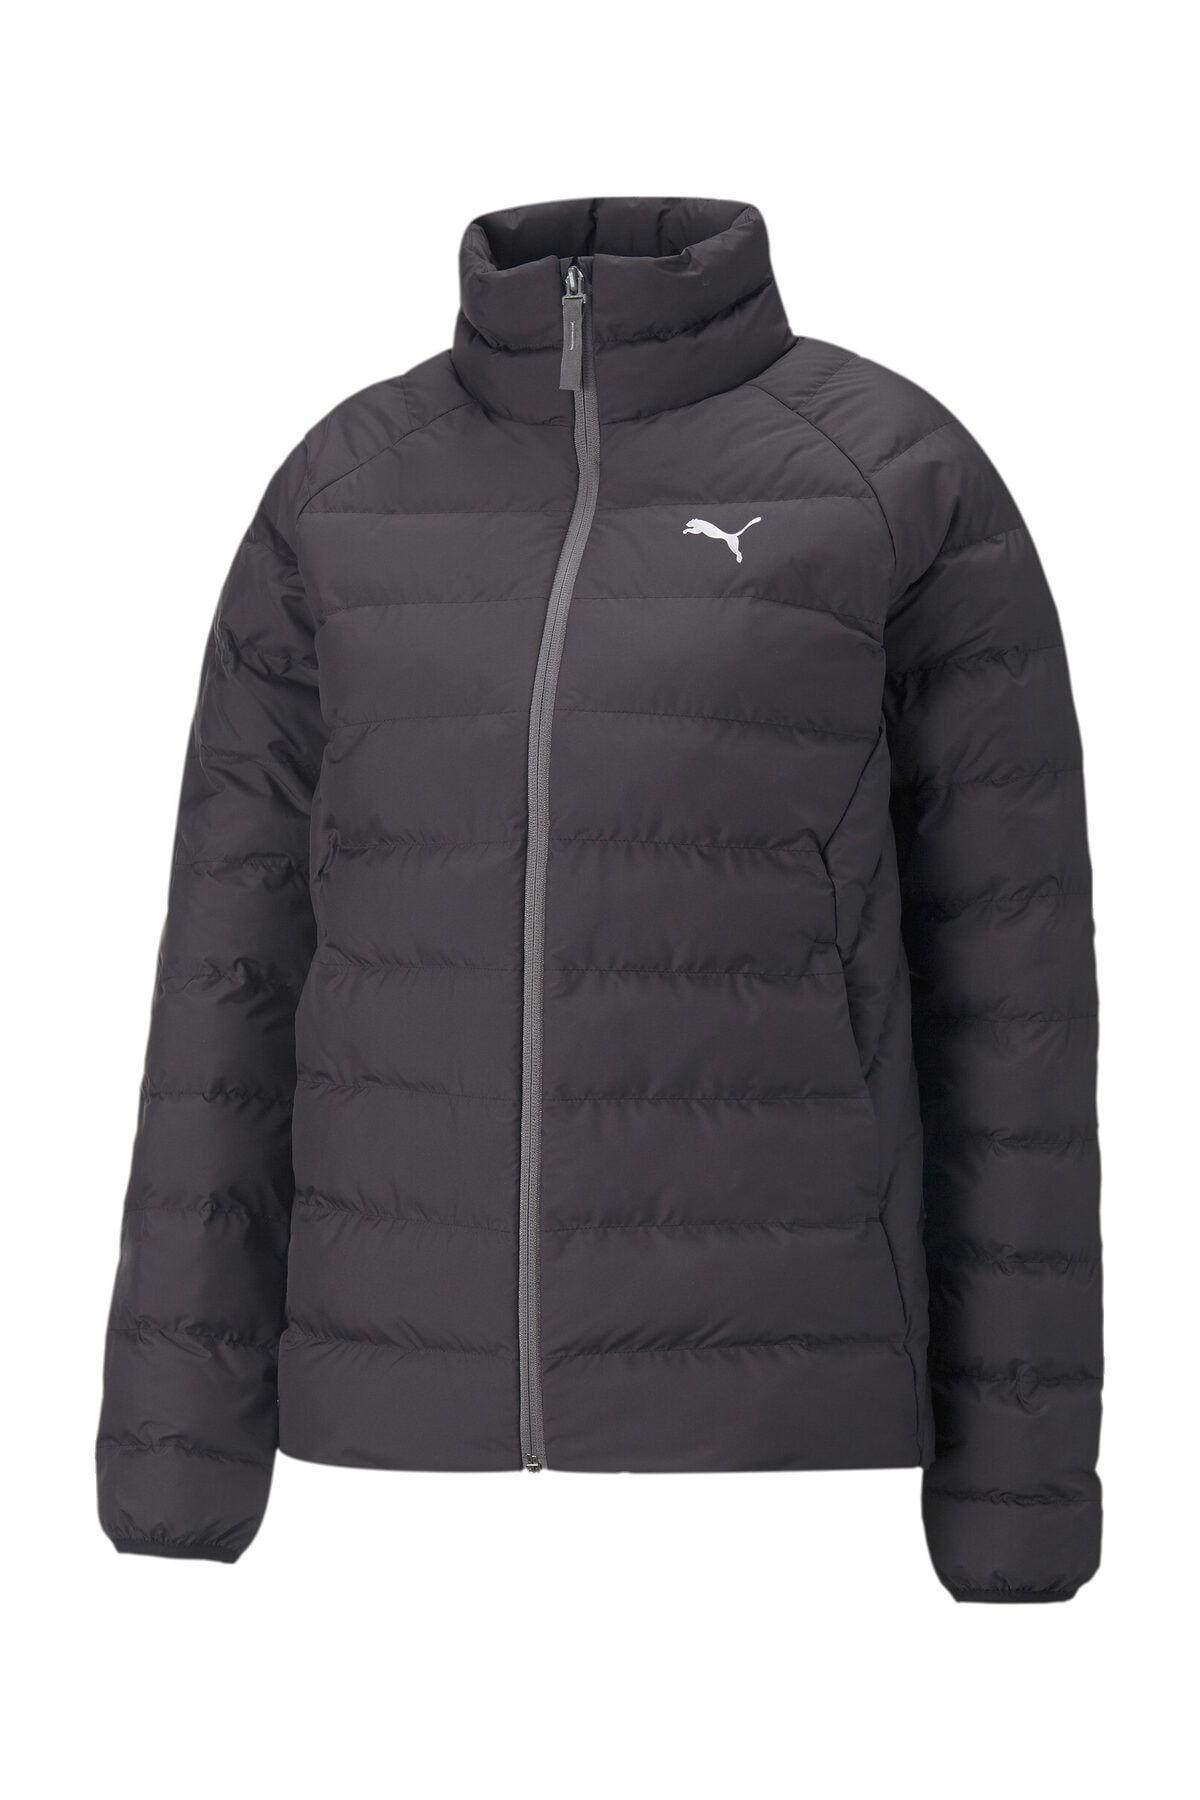 Puma Active Polyball Jacket - Black Sports Coat-Jacket - Trendyol